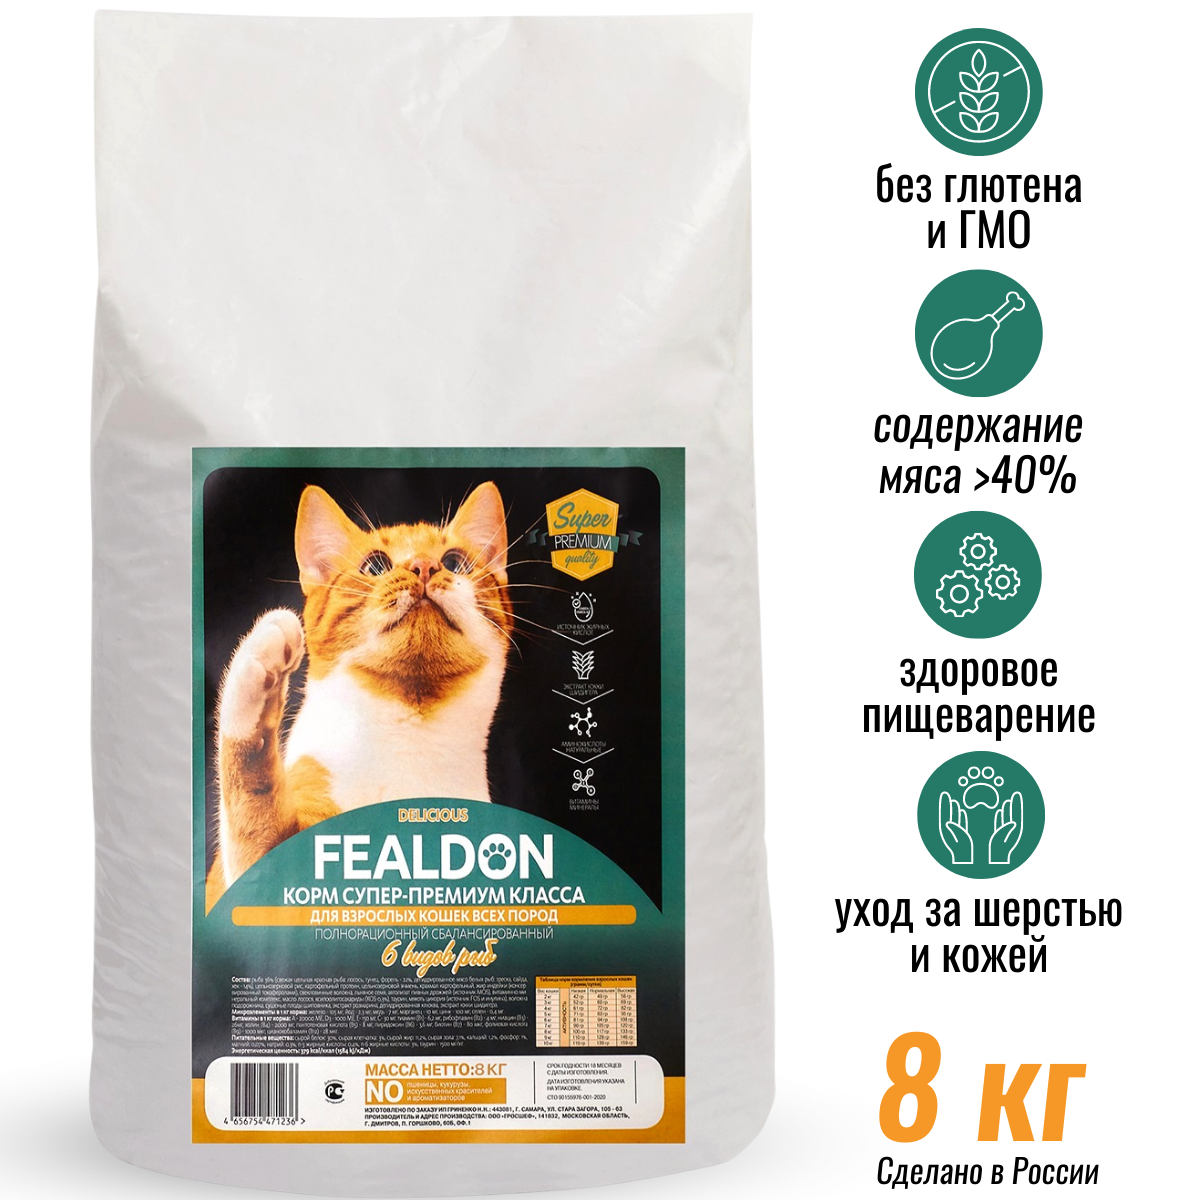 Сухой корм для кошек Fealdon Delicious Super Premium, для взрослых, 6 видов рыб, 8 кг